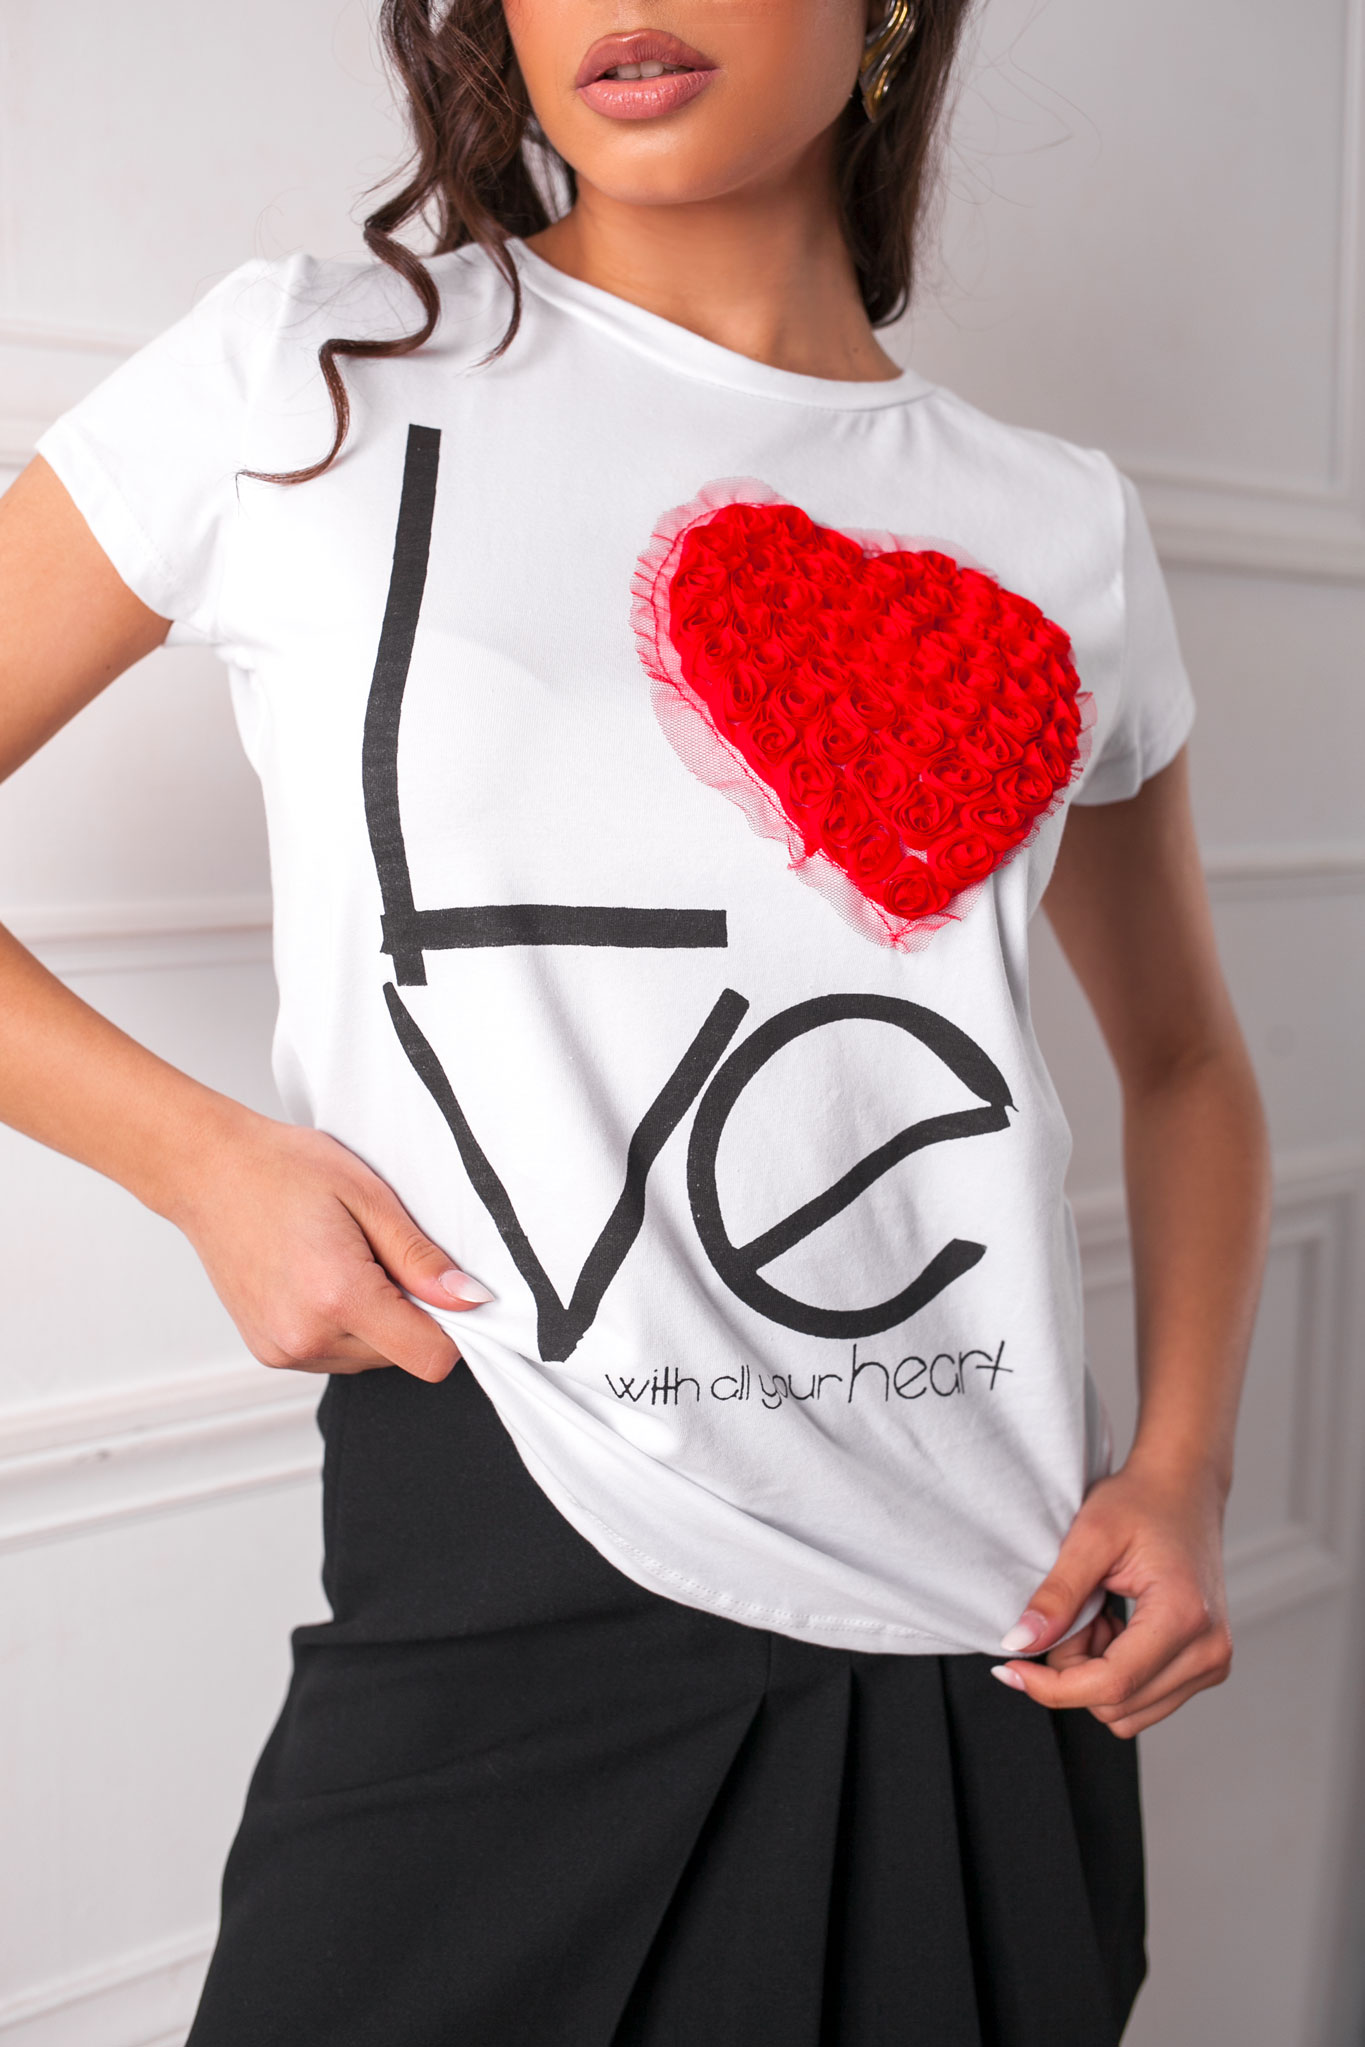 ΝΕΕΣ ΑΦΙΞΕΙΣ Chick t-shirt με κόκκινη καρδιά από τούλι λευκό